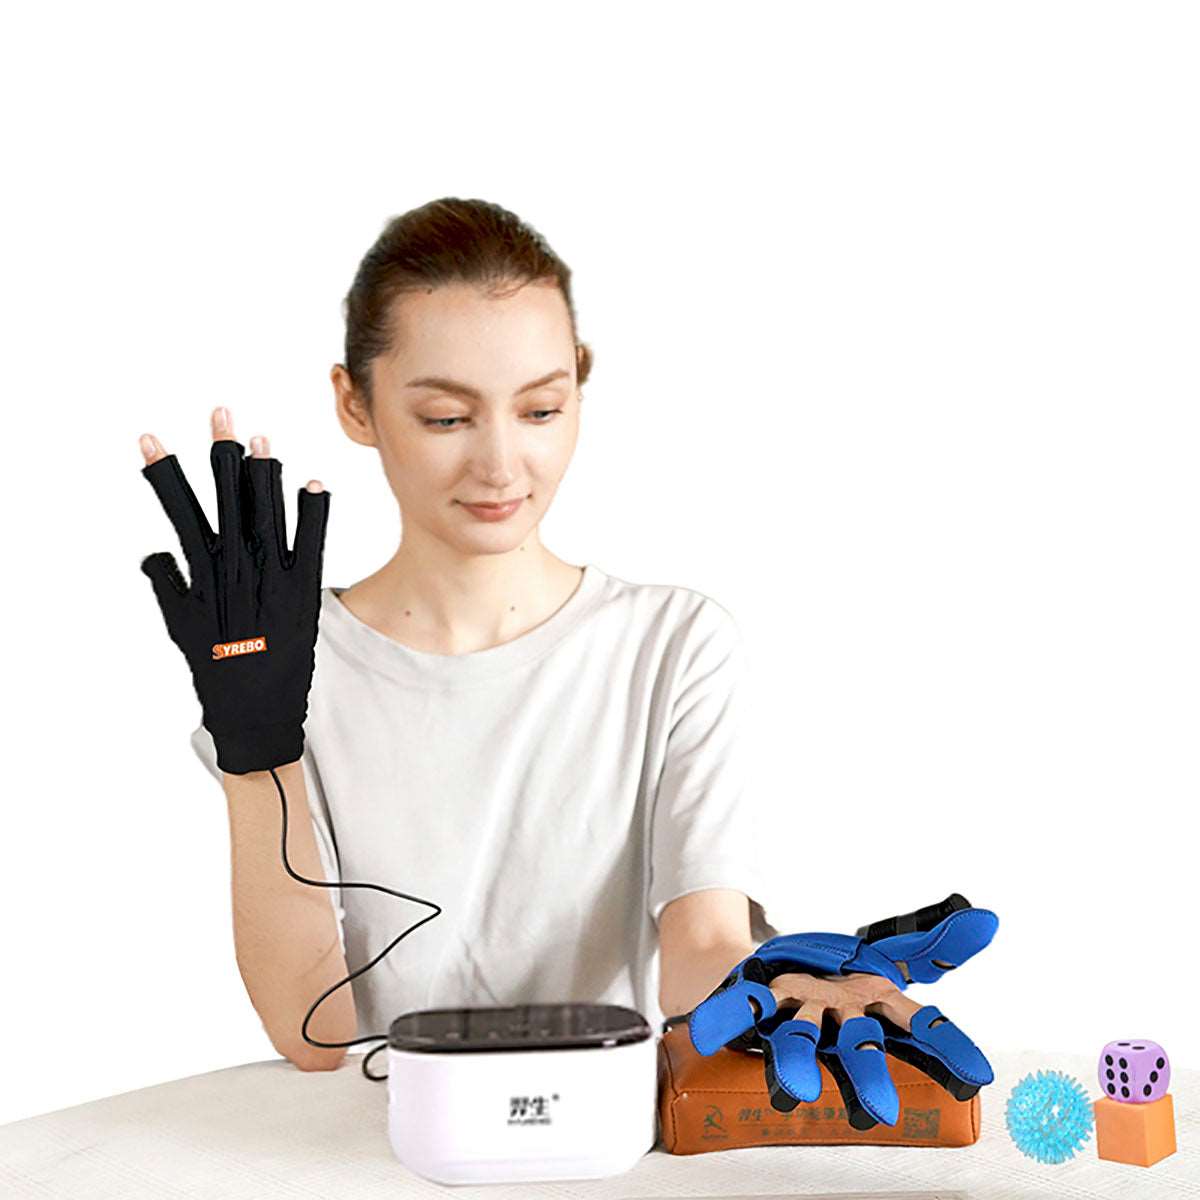 SYREBO C10 Rehabilitation Robot Gloves Hand Exerciser Tool 